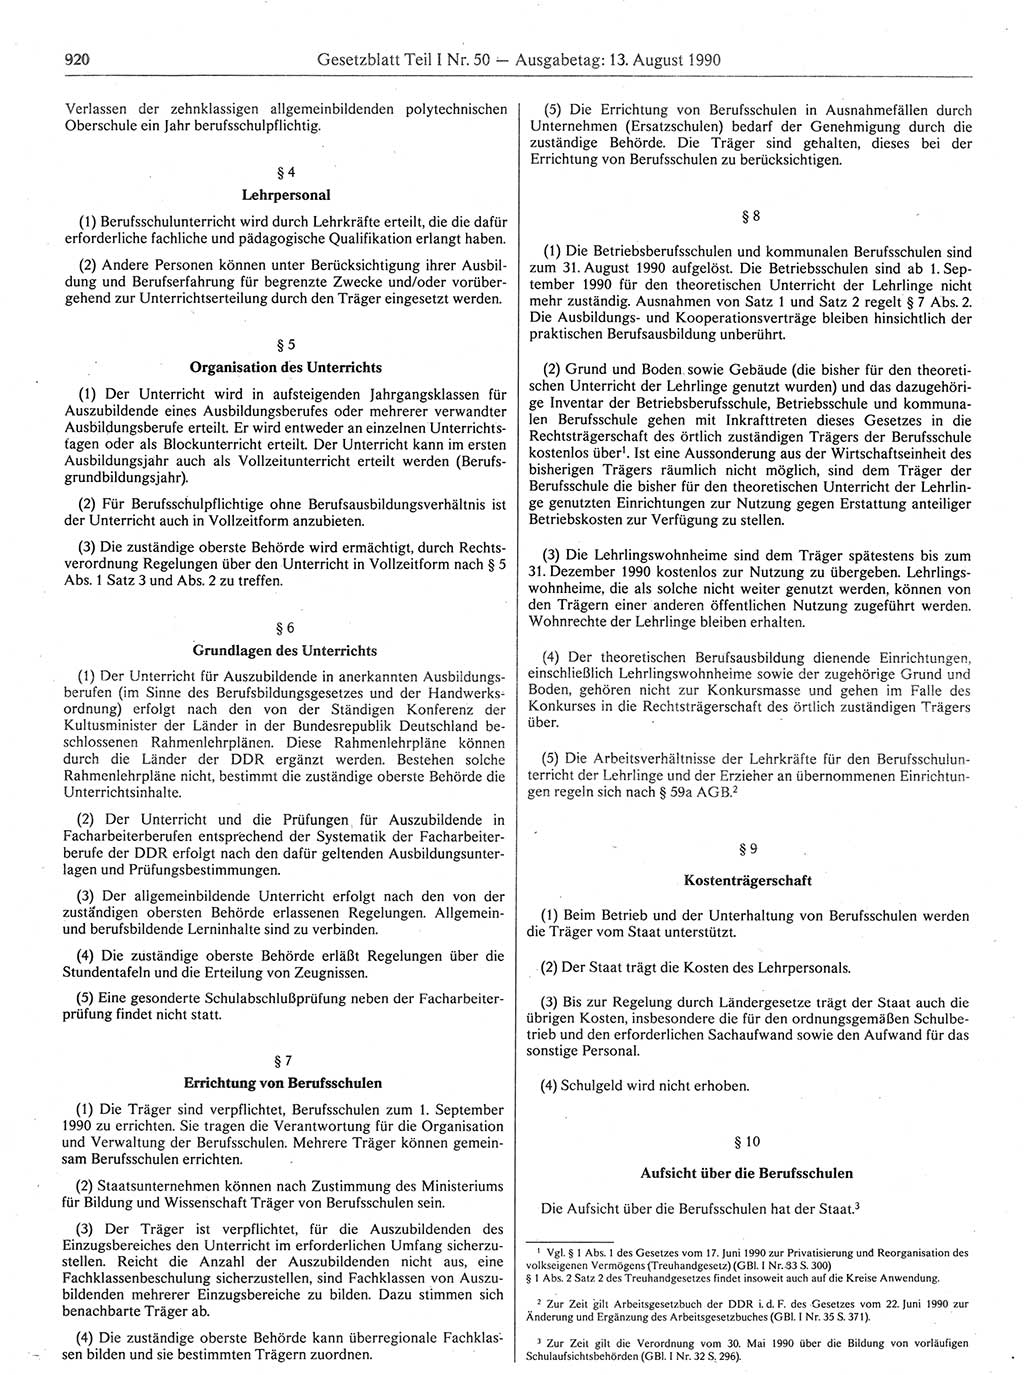 Gesetzblatt (GBl.) der Deutschen Demokratischen Republik (DDR) Teil Ⅰ 1990, Seite 920 (GBl. DDR Ⅰ 1990, S. 920)